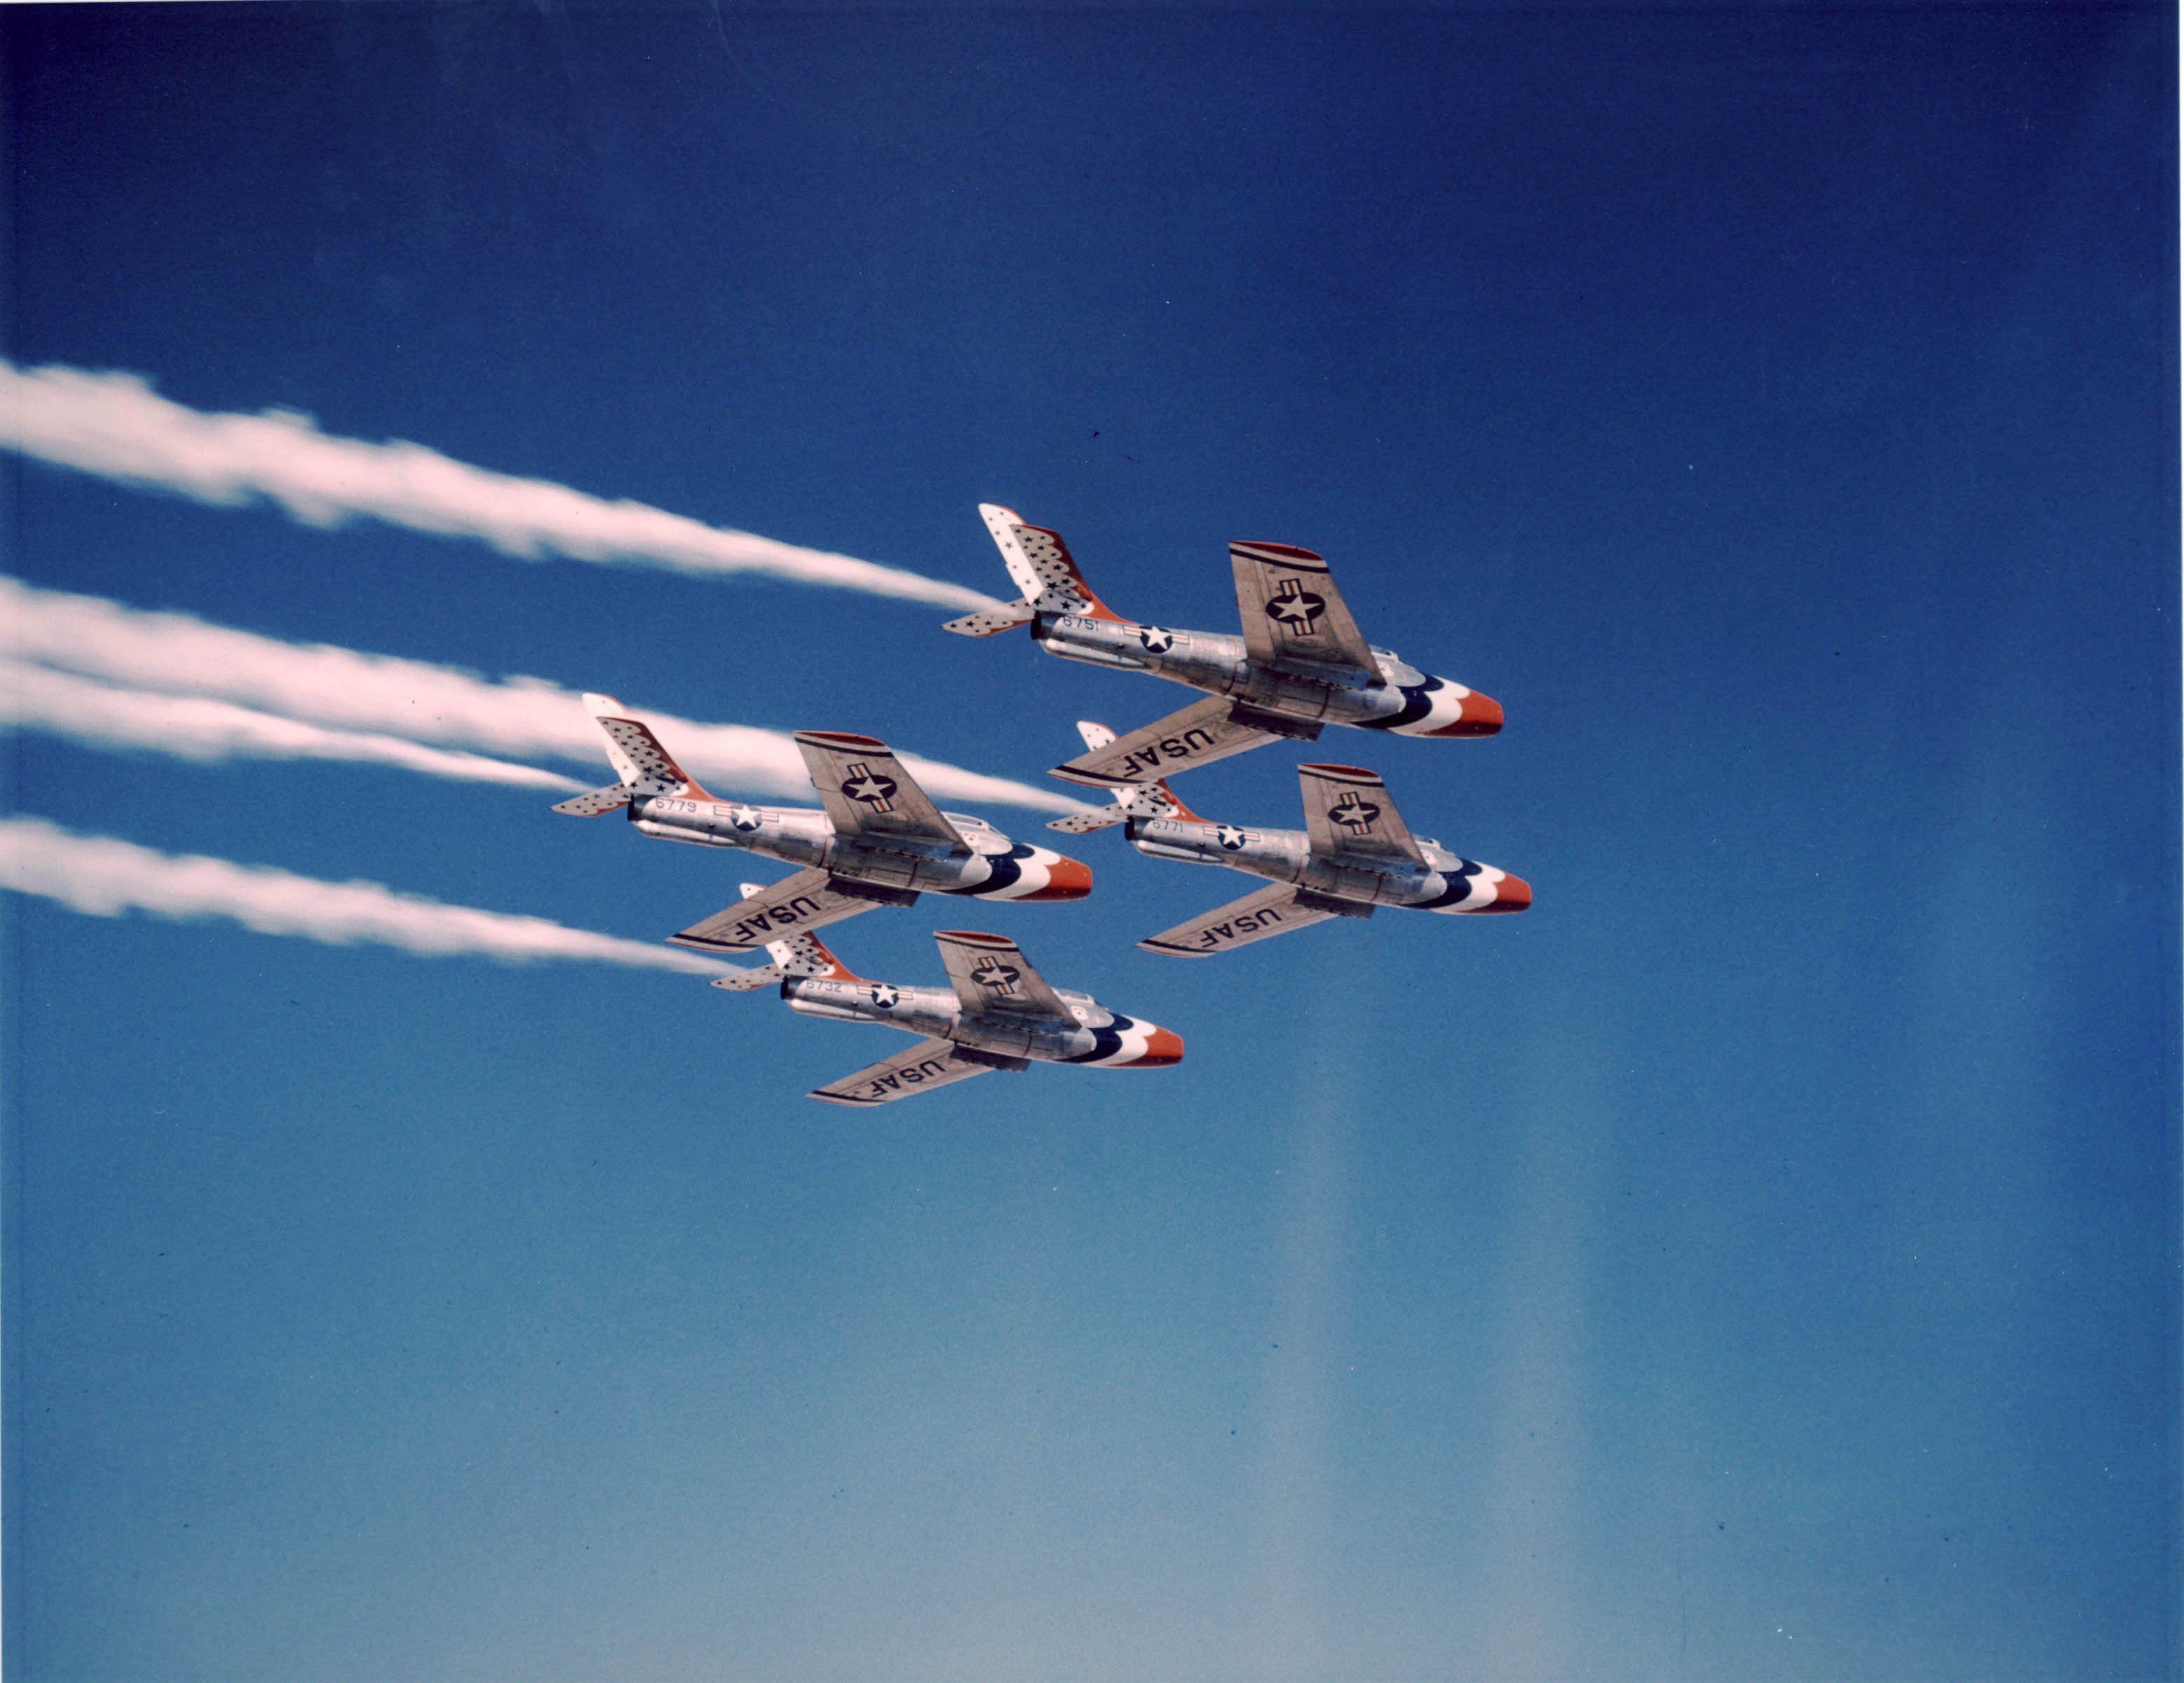 موسوعة اجيال الطائرات المقاتلة واشهر طائرات كل جيل - صفحة 2 F-84F_Thunderbirds